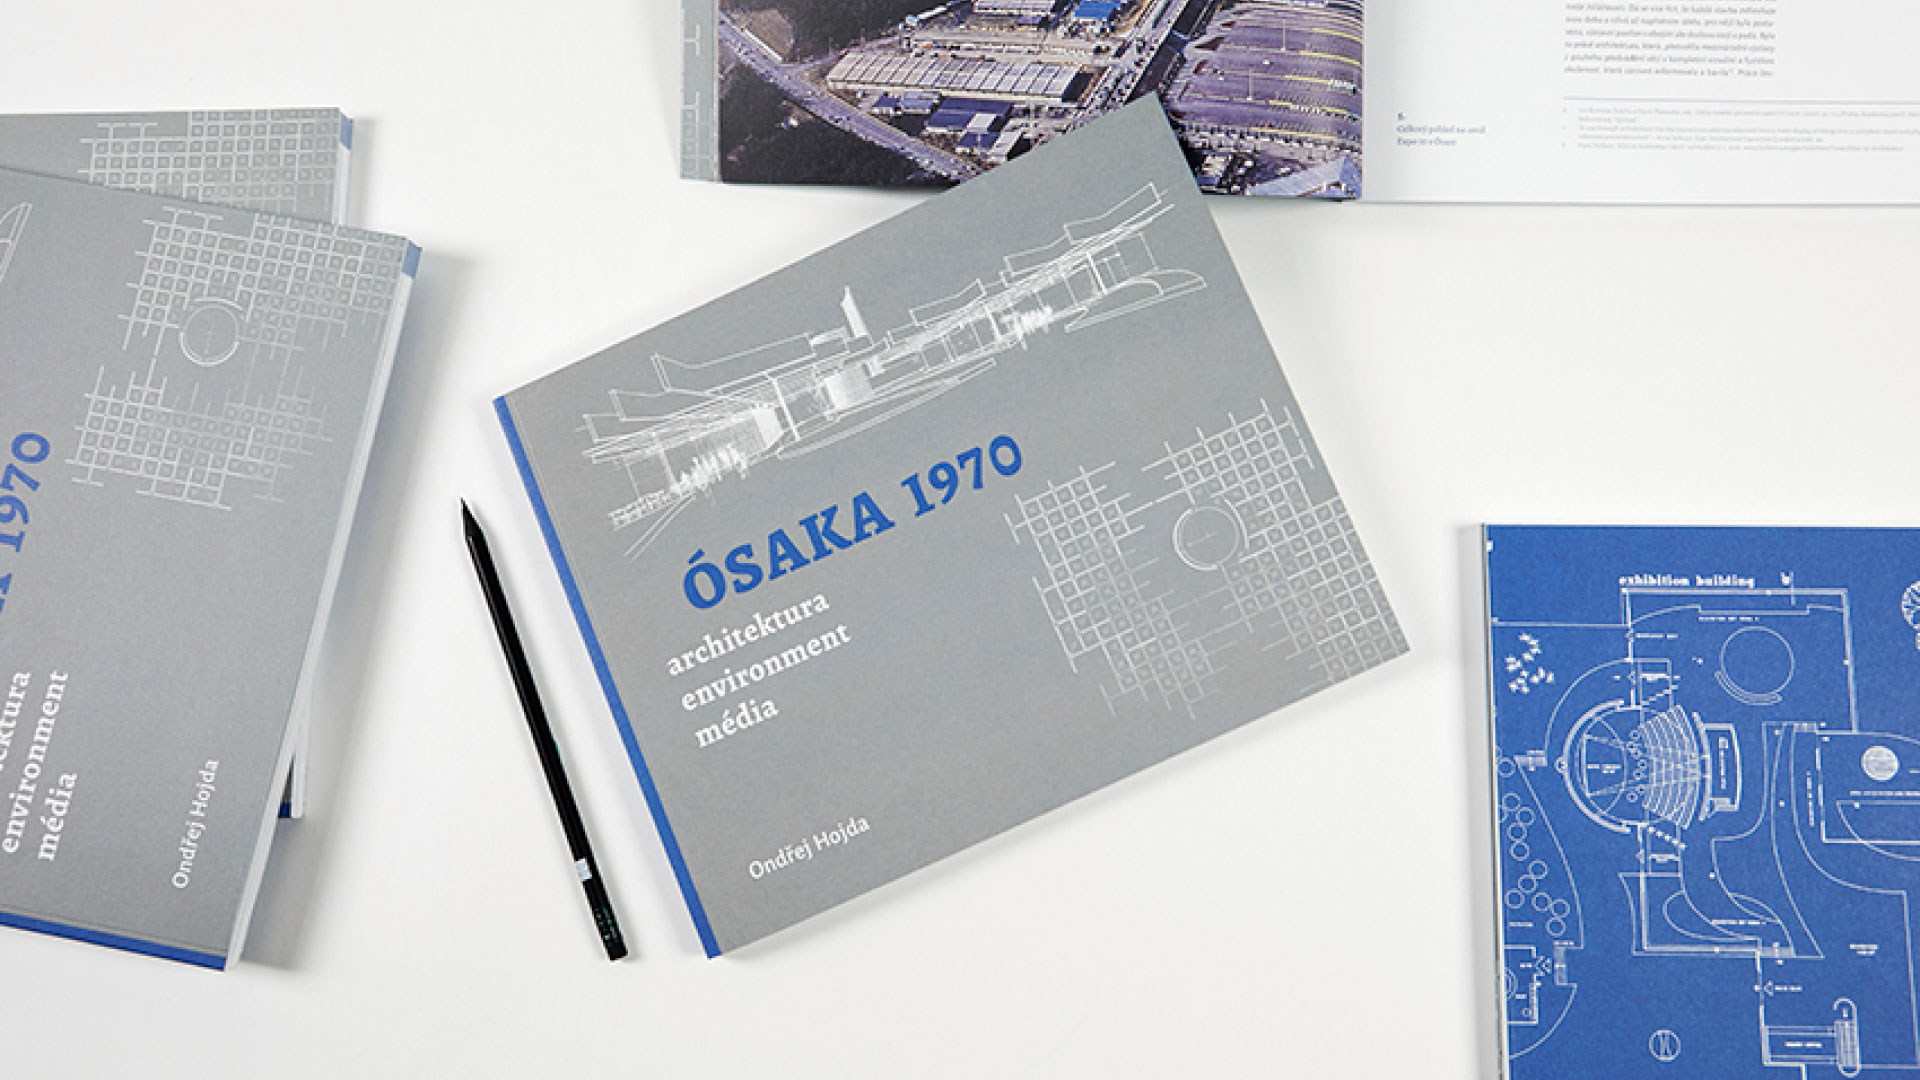 Uvedení knihy Ósaka 1970: Architektura, environment a média